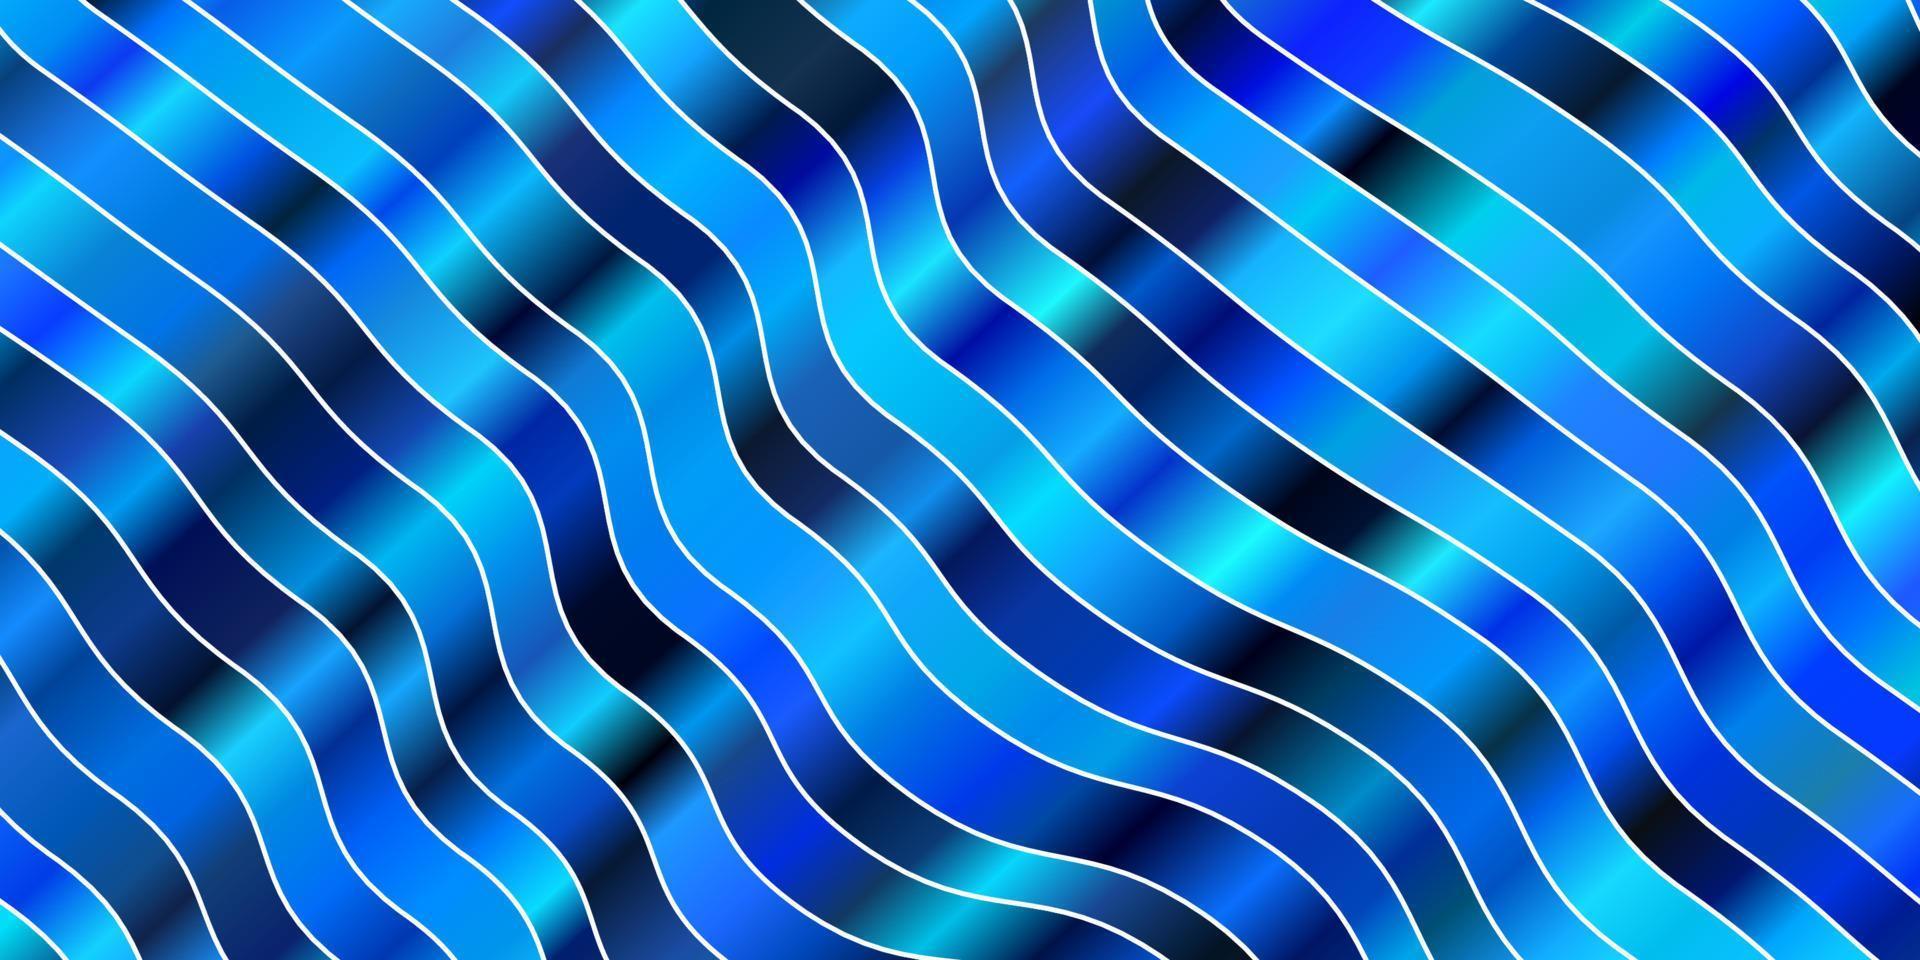 pano de fundo vector azul claro com curvas.